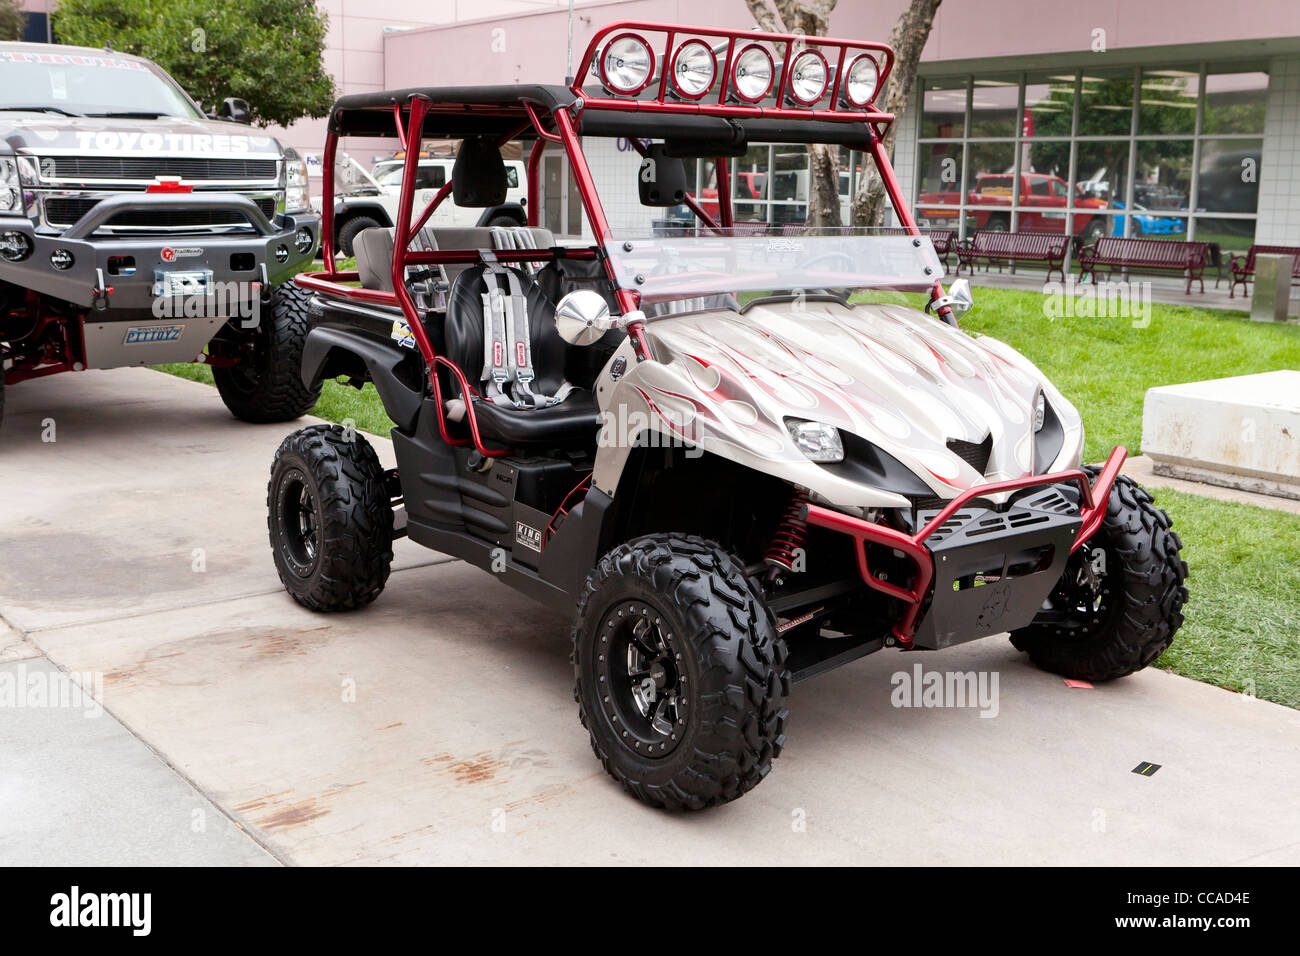 A Polaris off-road AWD ATV rebuild on display Stock Photo